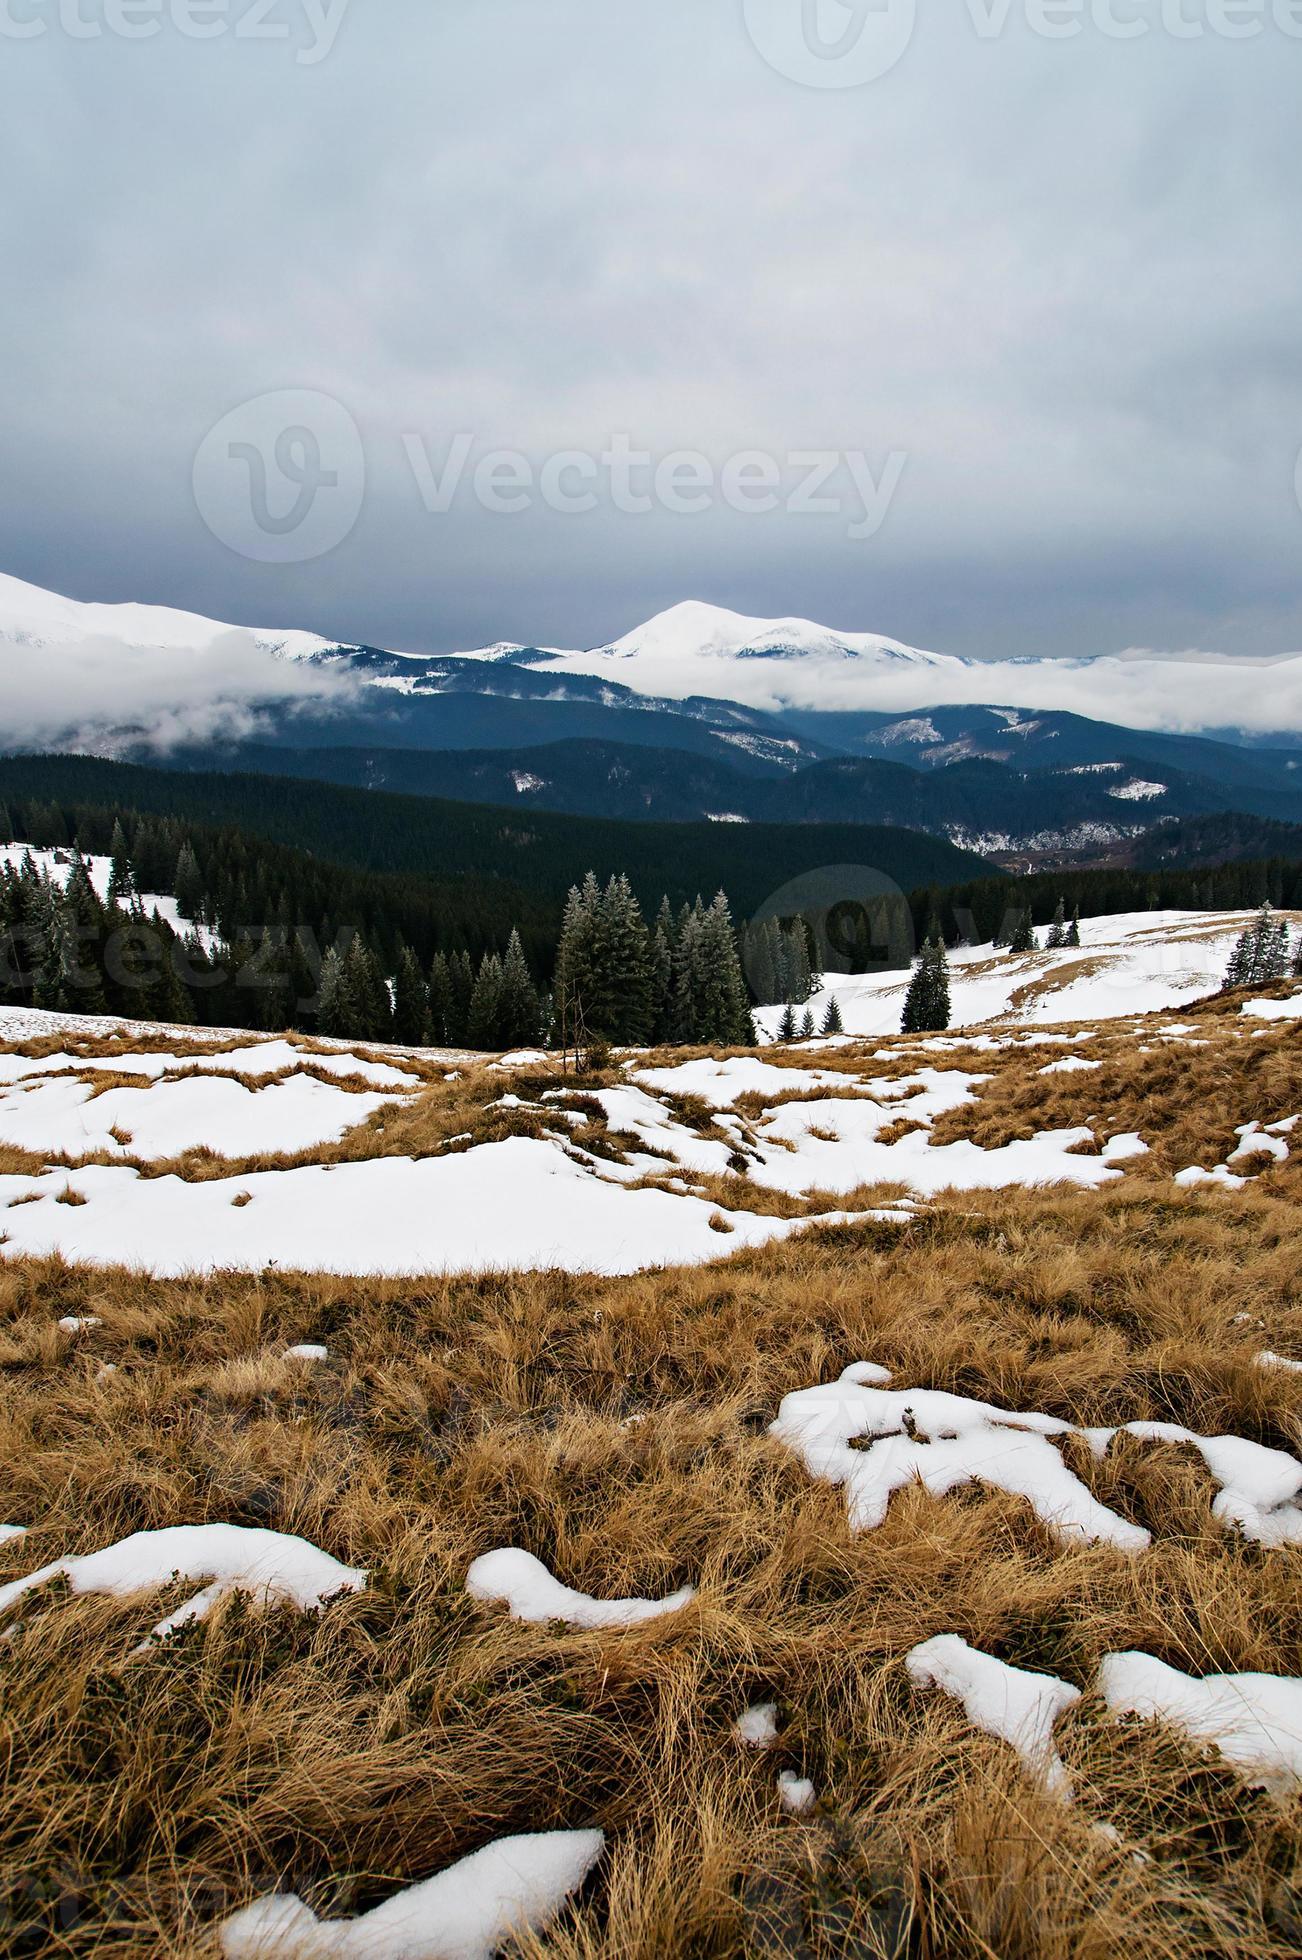 paisagem de montanha do inverno foto